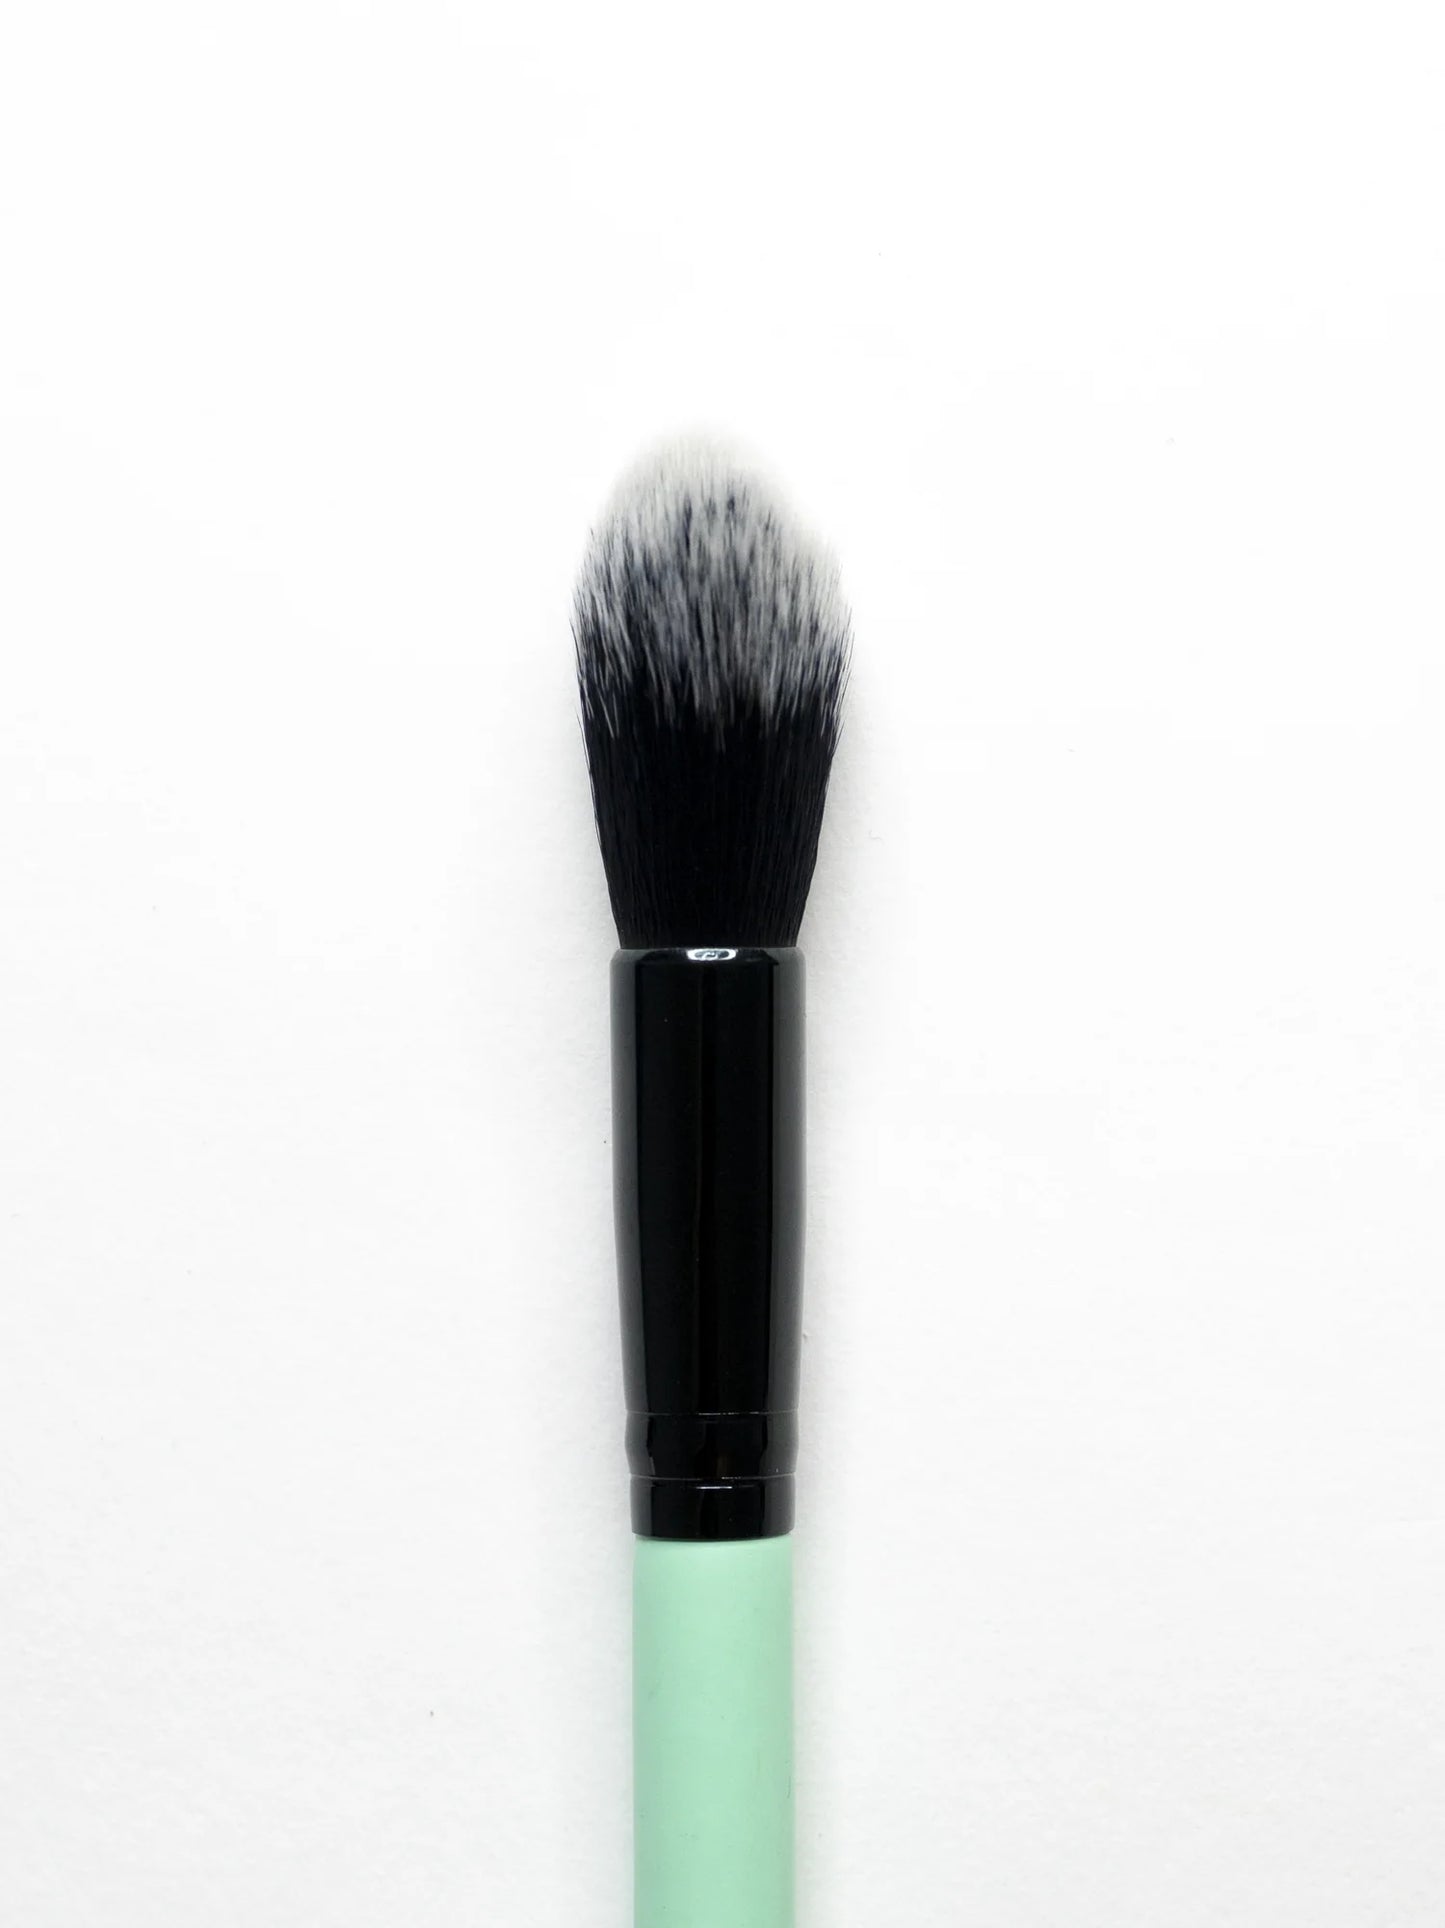 Small Powder Brush 38 Make-up Brush EDY LONDON Turquoise   [variant_option4] EDY LONDON PRODUCTS UK shop.edy.london